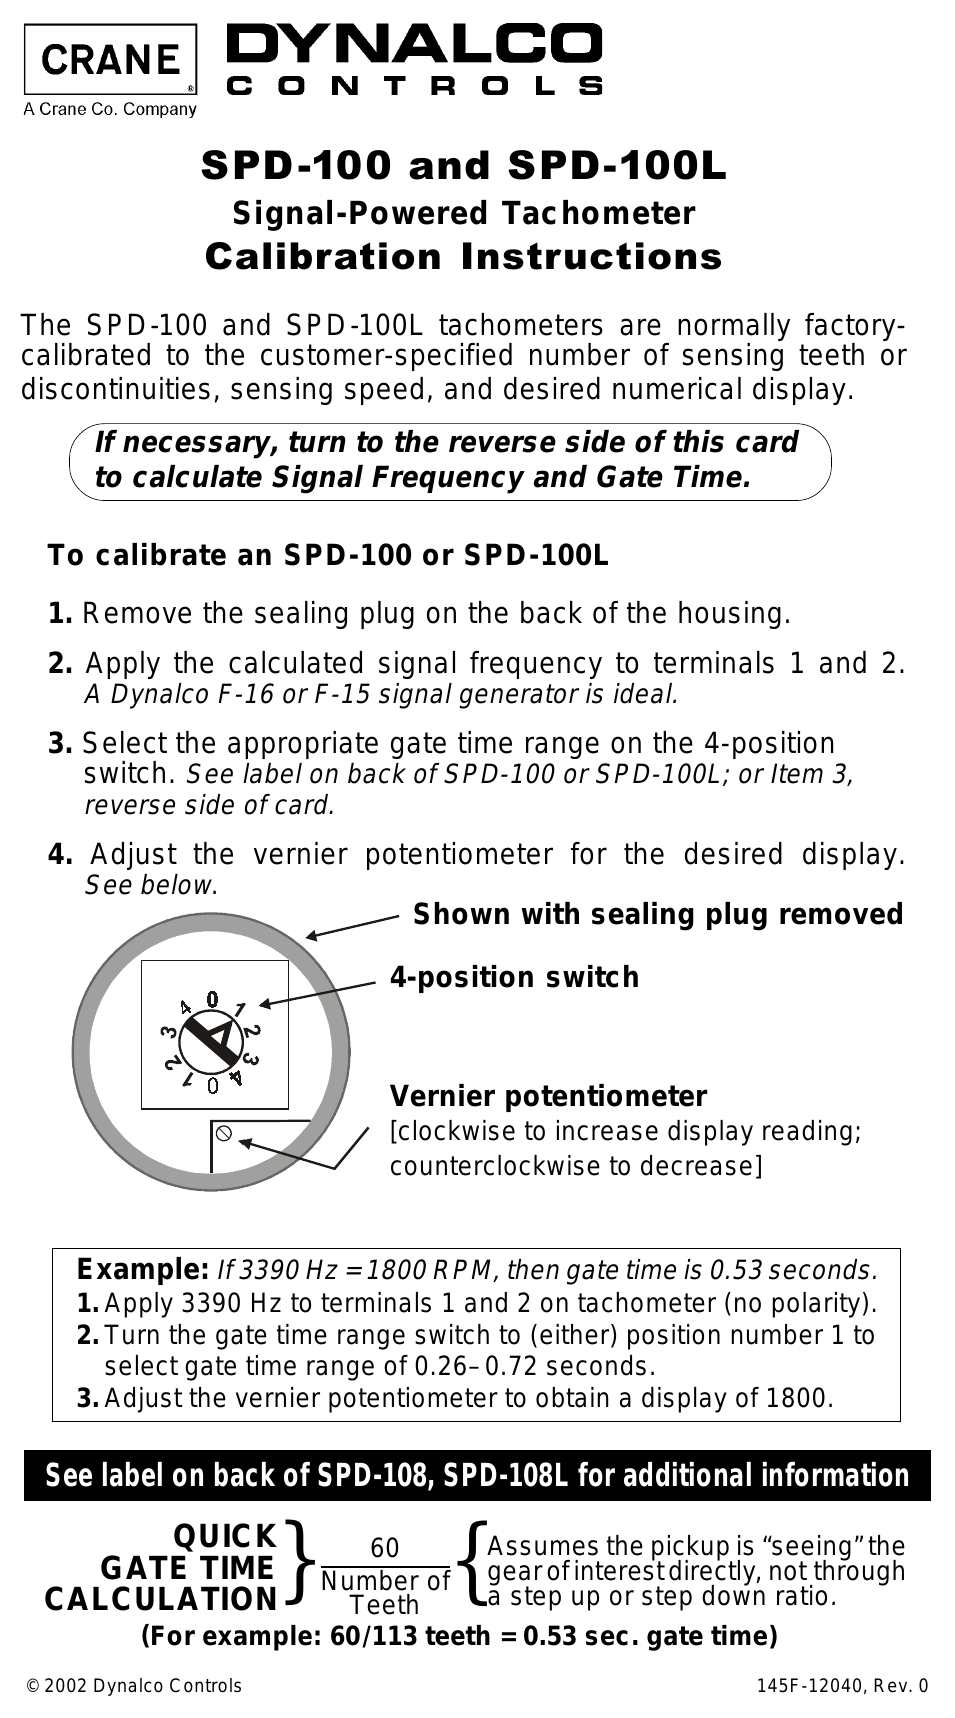 SPD-100L Tachometer